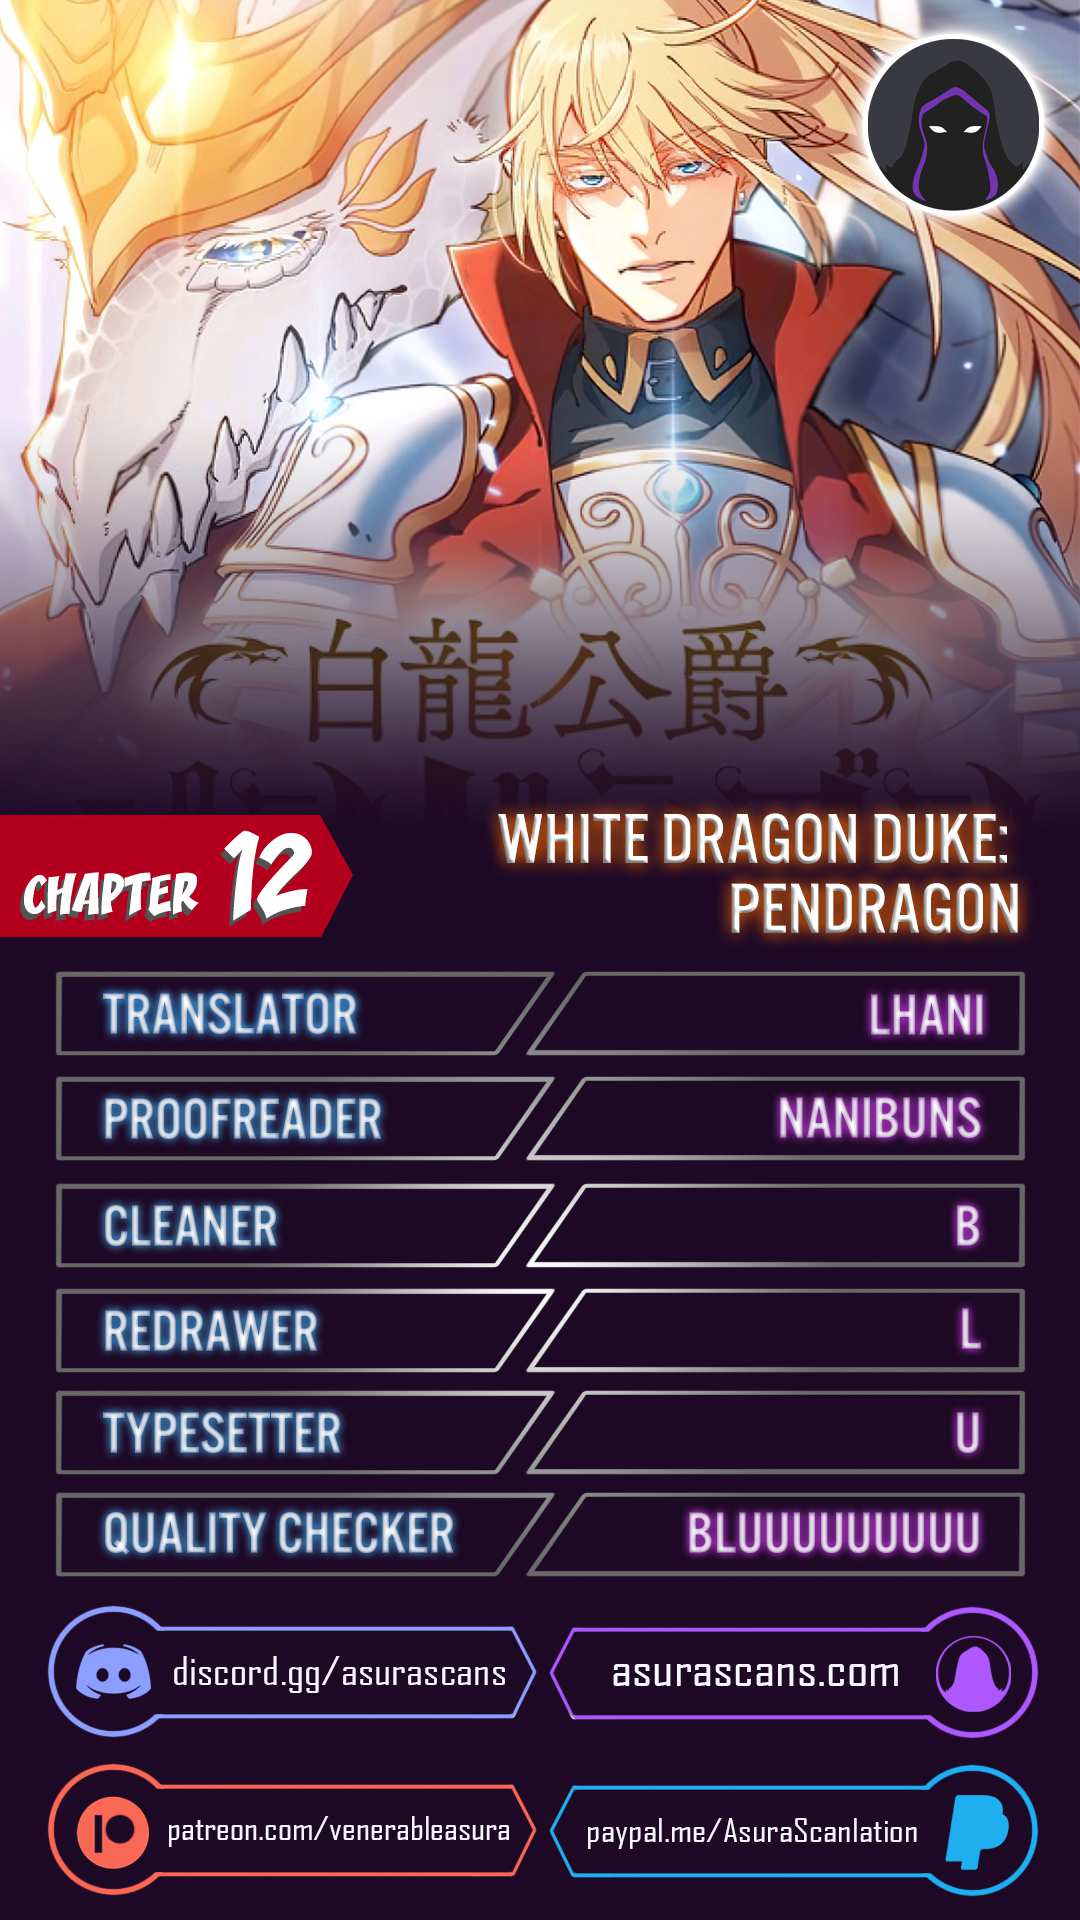 White Dragon Duke: Pendragon chapter 12 page 1